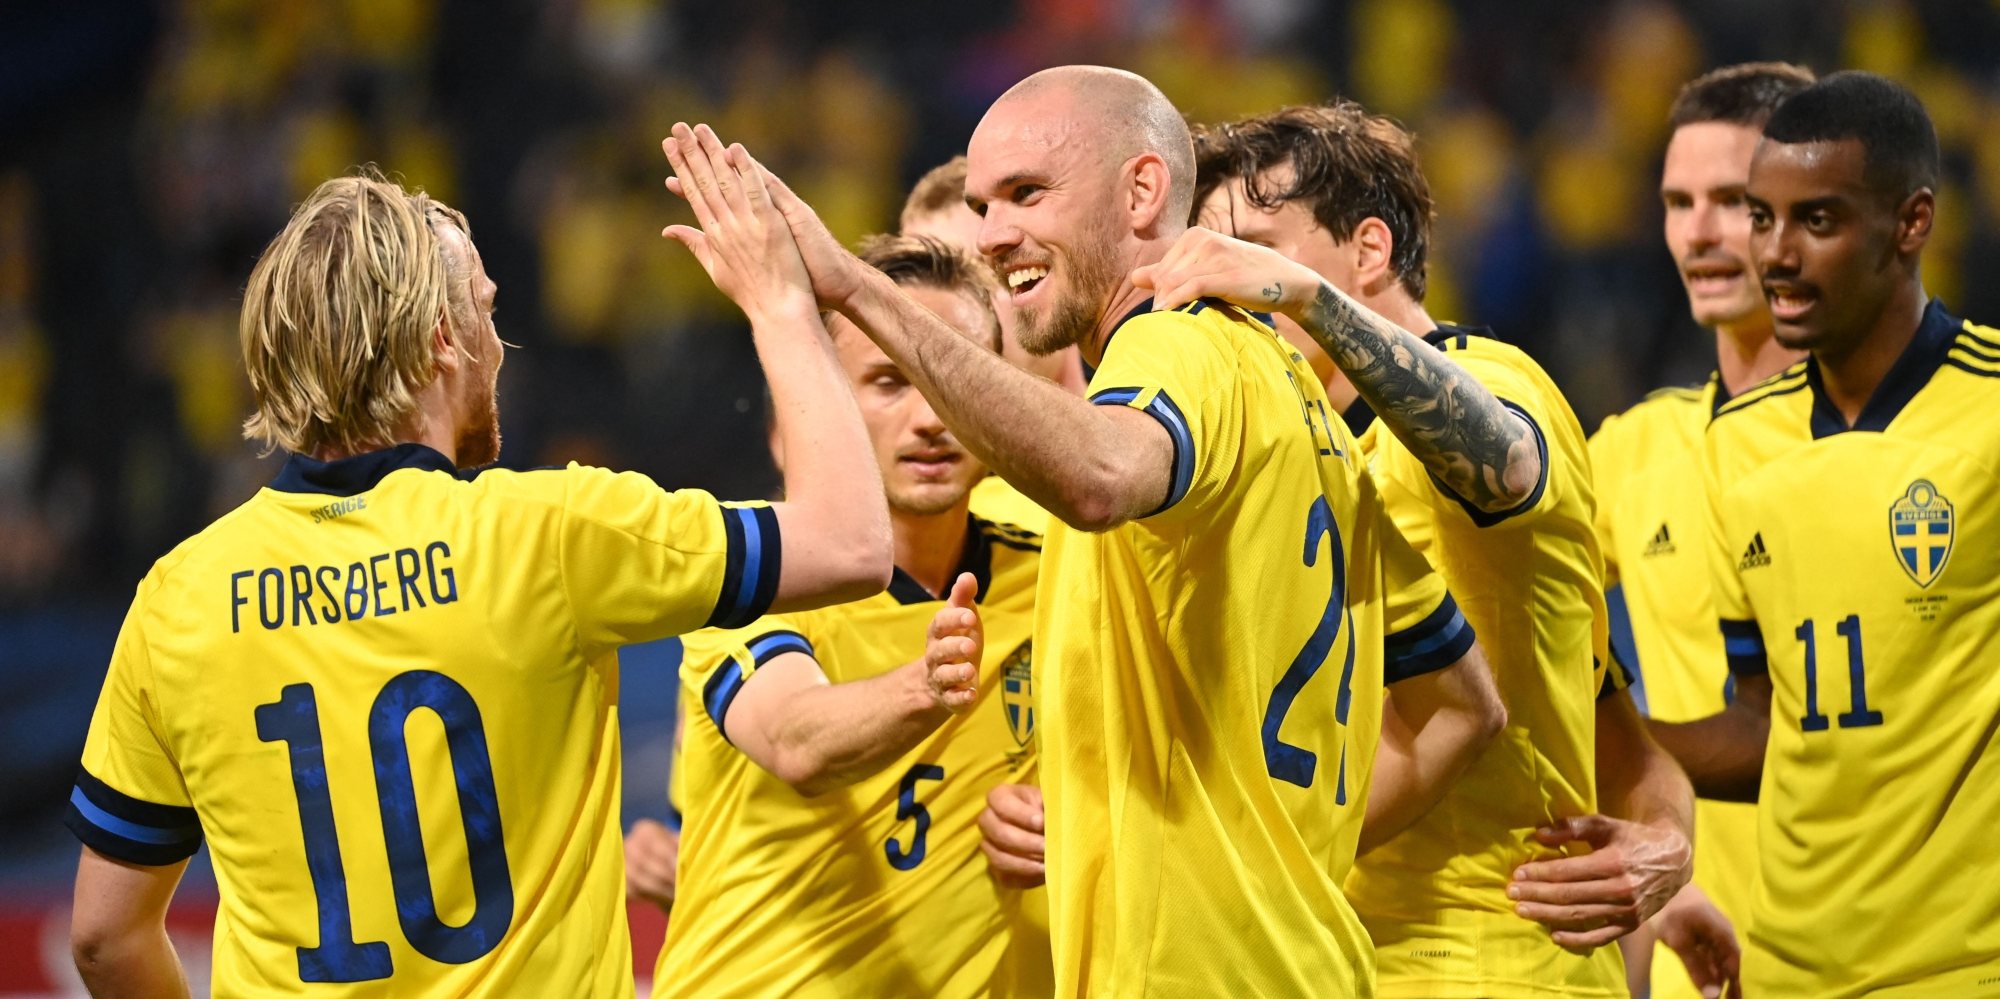 Suécia acabou a qualificação no segundo lugar de um grupo onde estavam também Espanha, Noruega, Roménia, Ilhas Faroé e Malta